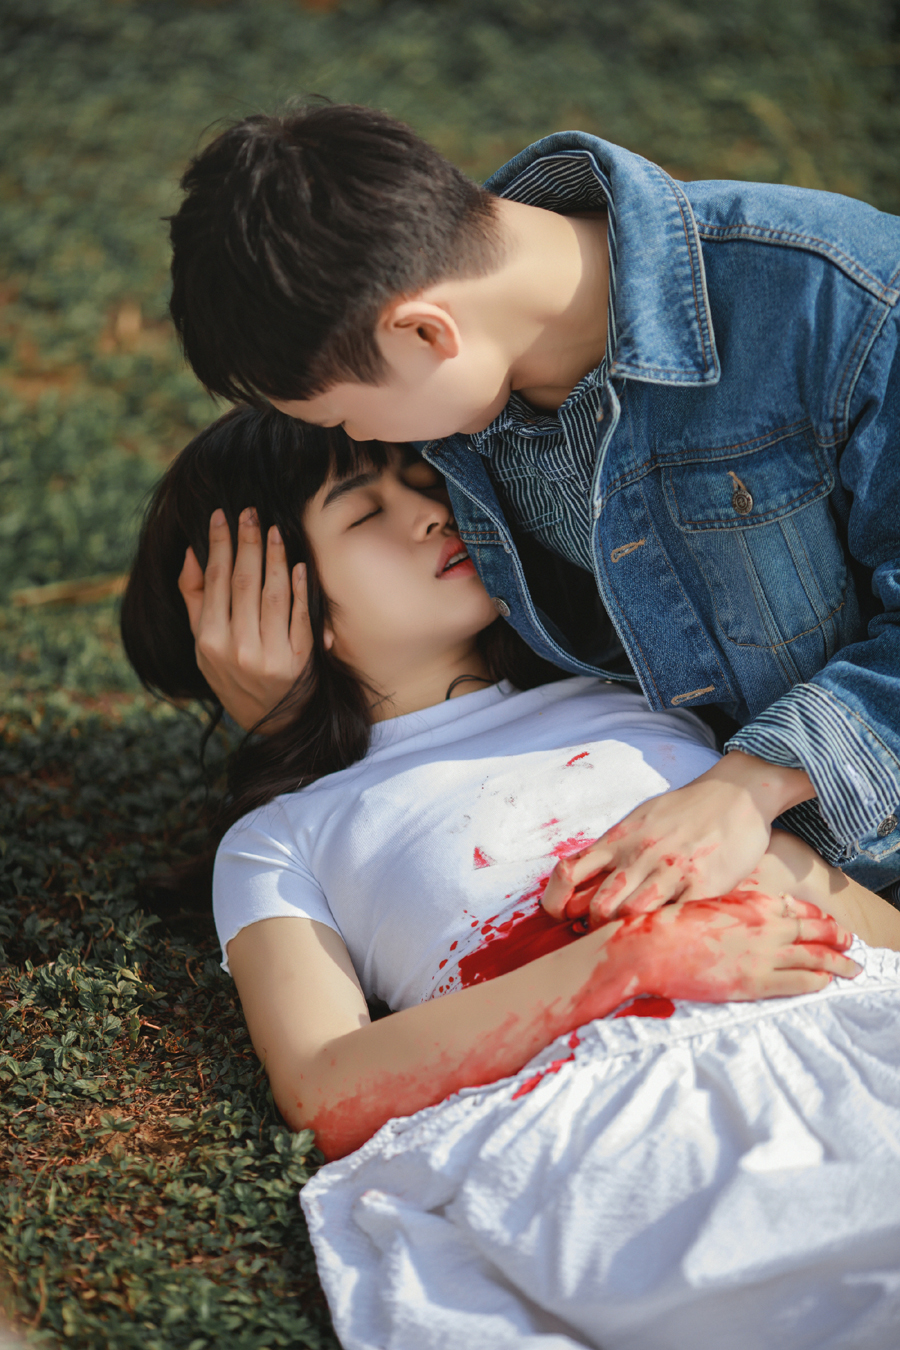 JSol - Khánh Vân kể chuyện tình “không tưởng”: Ngược dòng thời gian bảo vệ người yêu, tự chọn cái kết đau buồn cho chính mình - ảnh 2